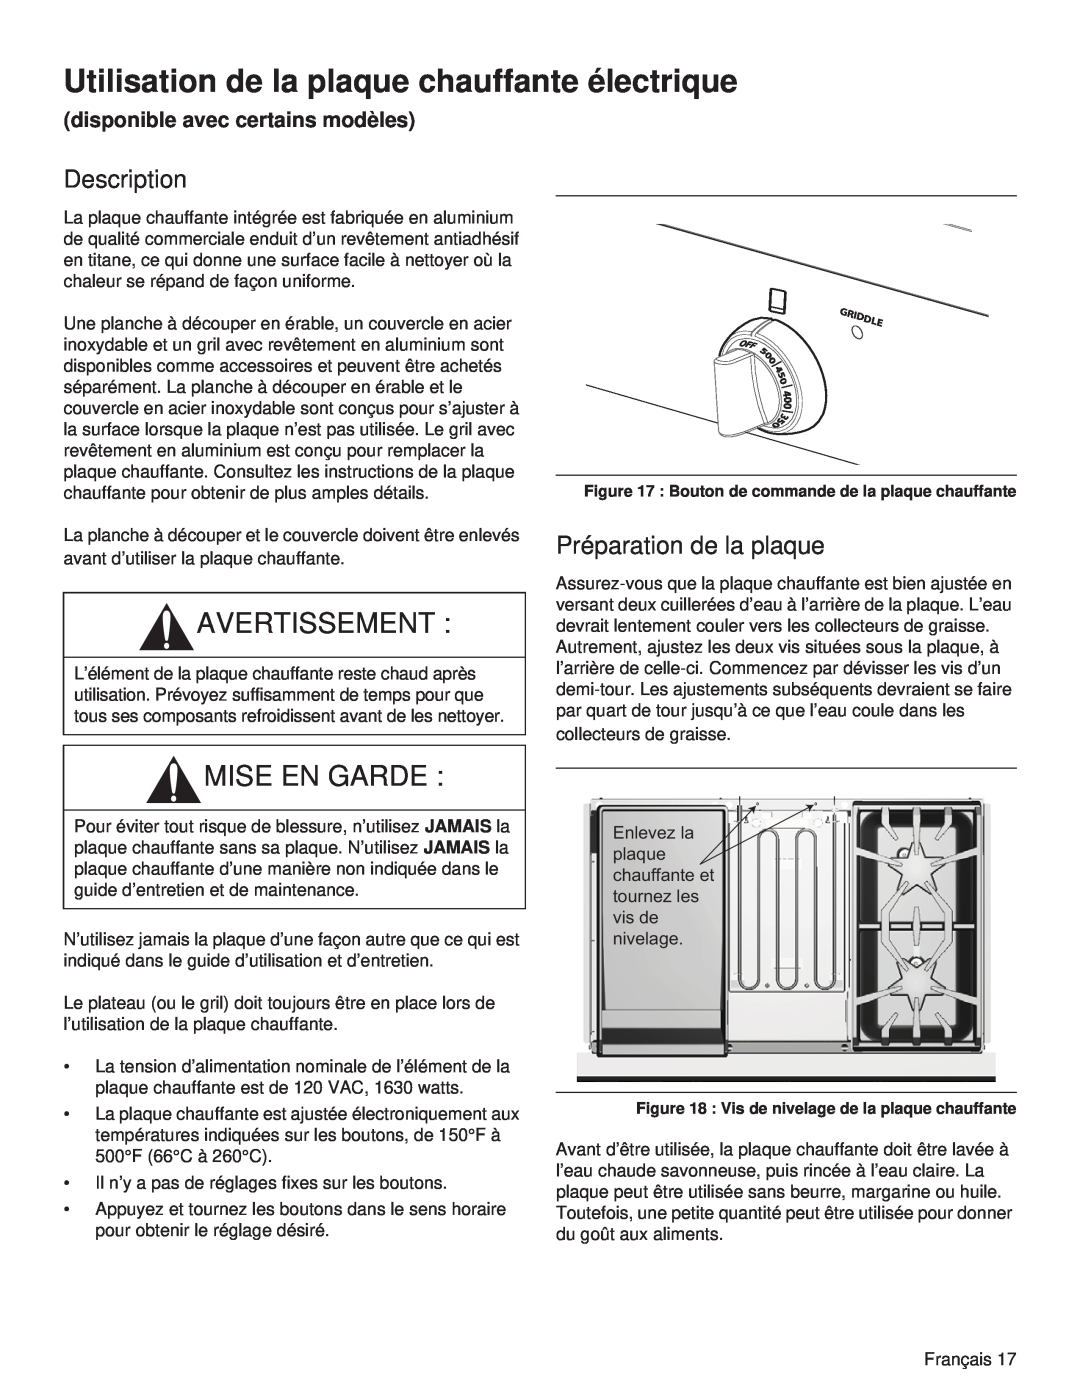 Thermador PCG48, PCG36, PCG30 manual Utilisation de la plaque chauffante électrique, Avertissement, Mise En Garde 